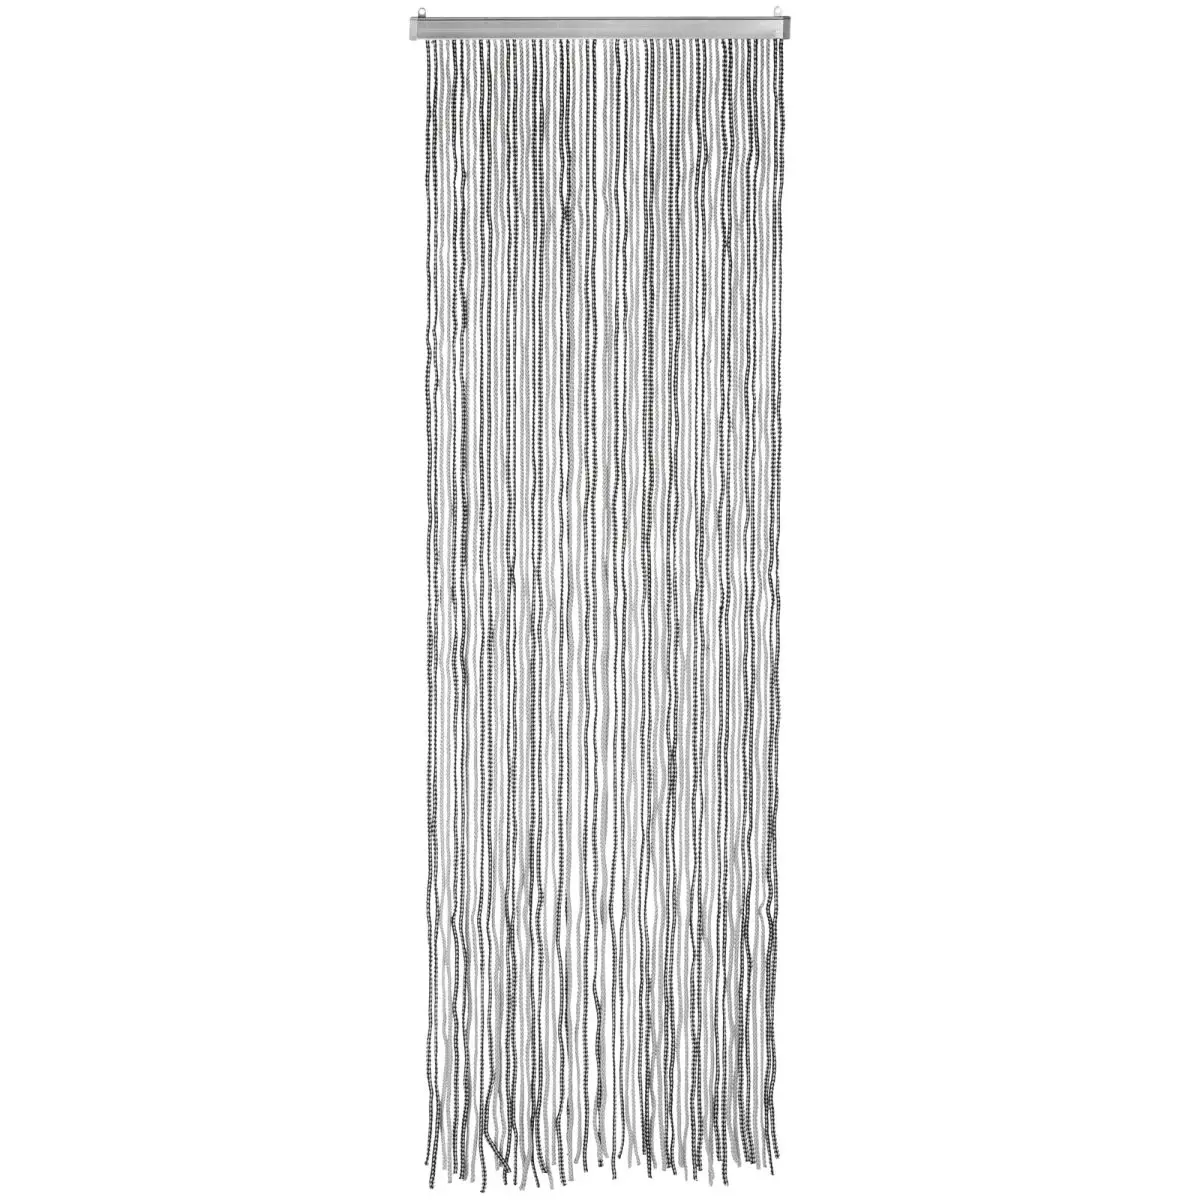 Vorhang Korda anthrazit/silber - Gre 60 x 190 cm